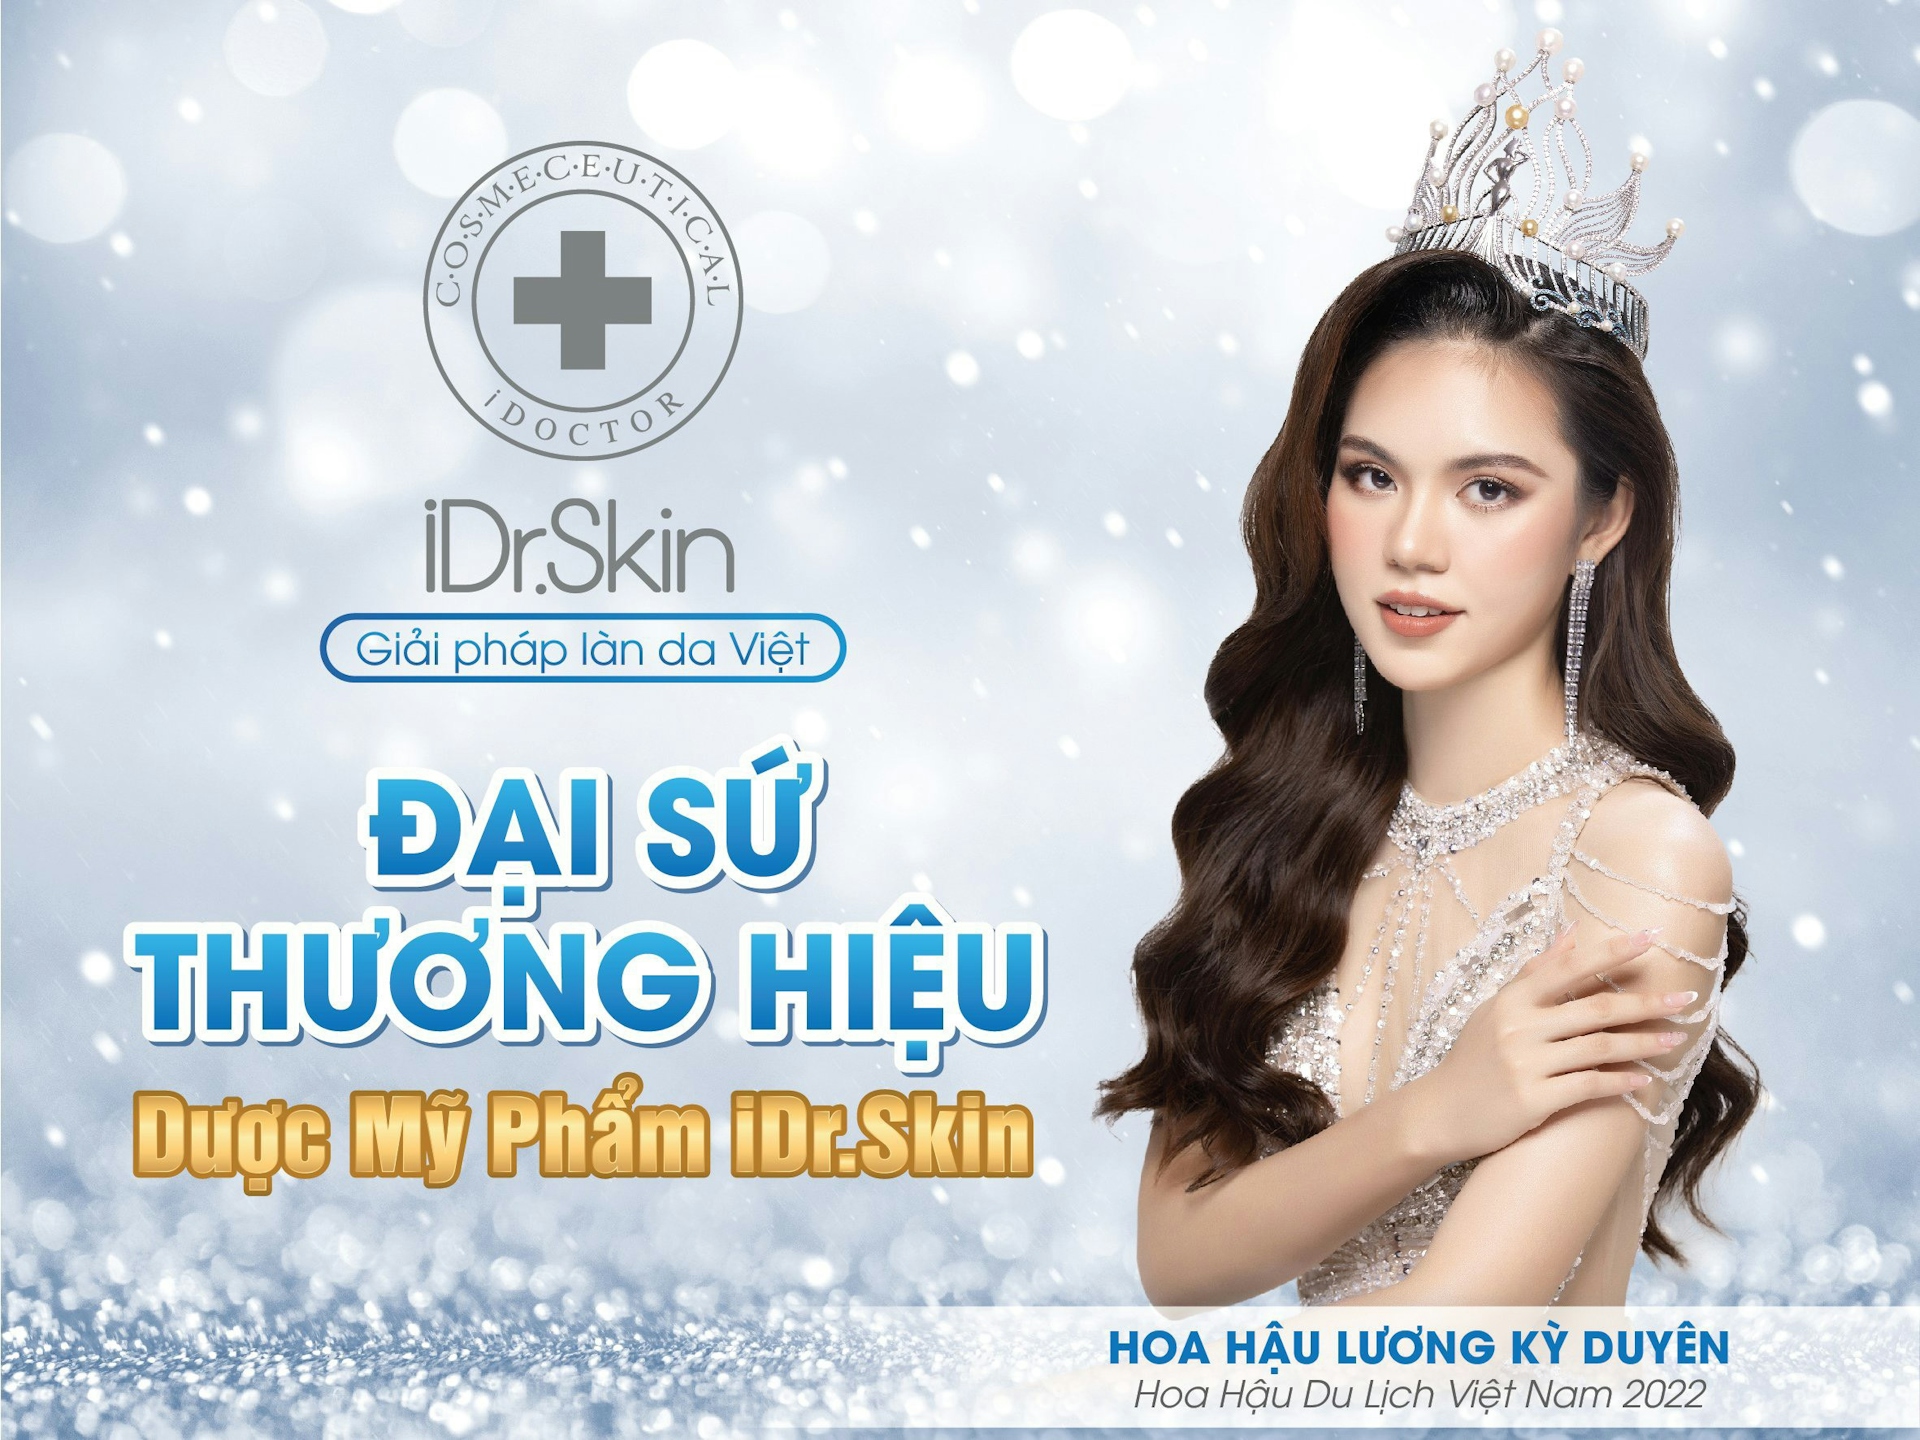 Đại sứ thương hiệu Dược mỹ phẩm iDr.Skin - Hoa hậu Du lịch VN Lương Kỳ Duyên